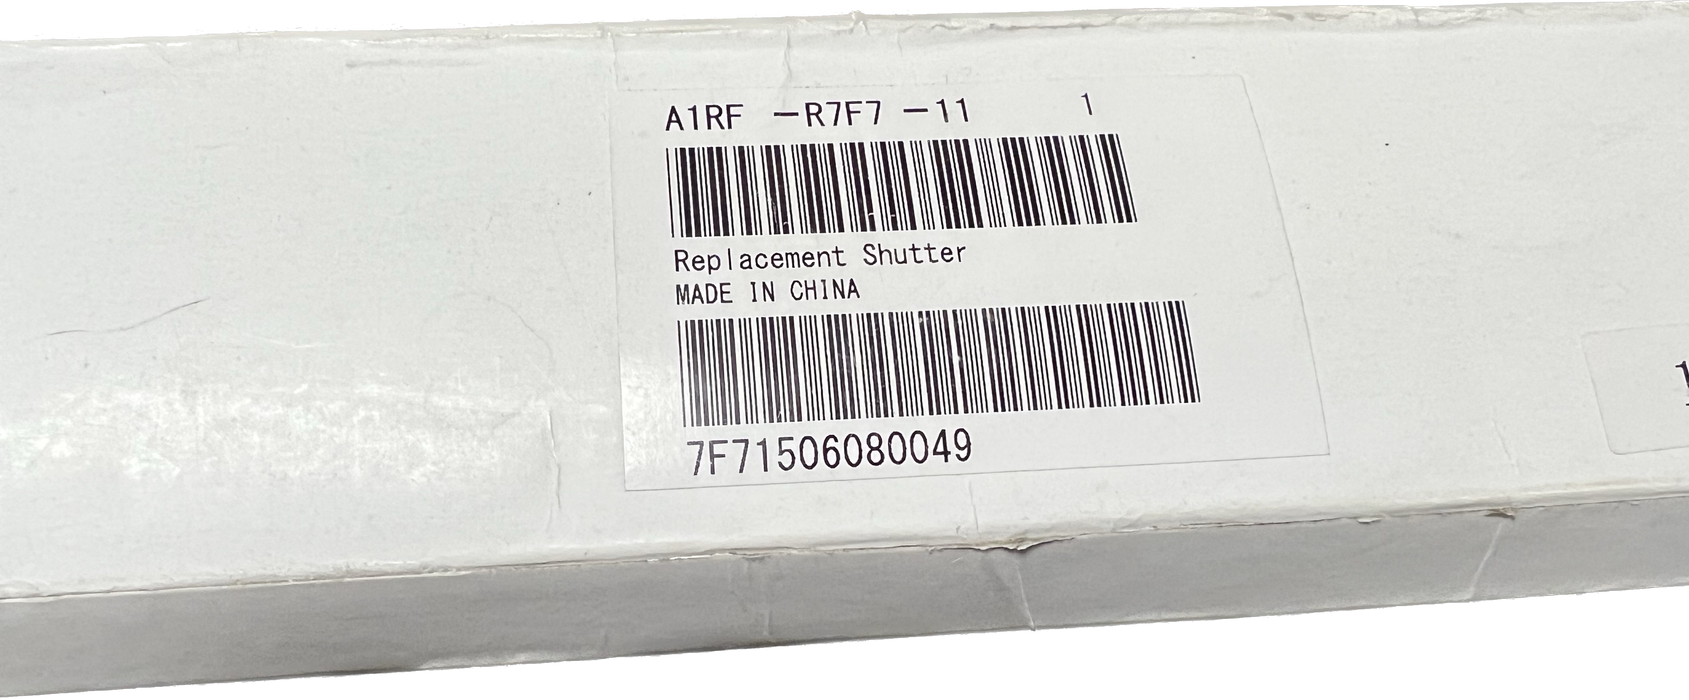 Konica Minolta Replacement Shutter | A1RFR7F711